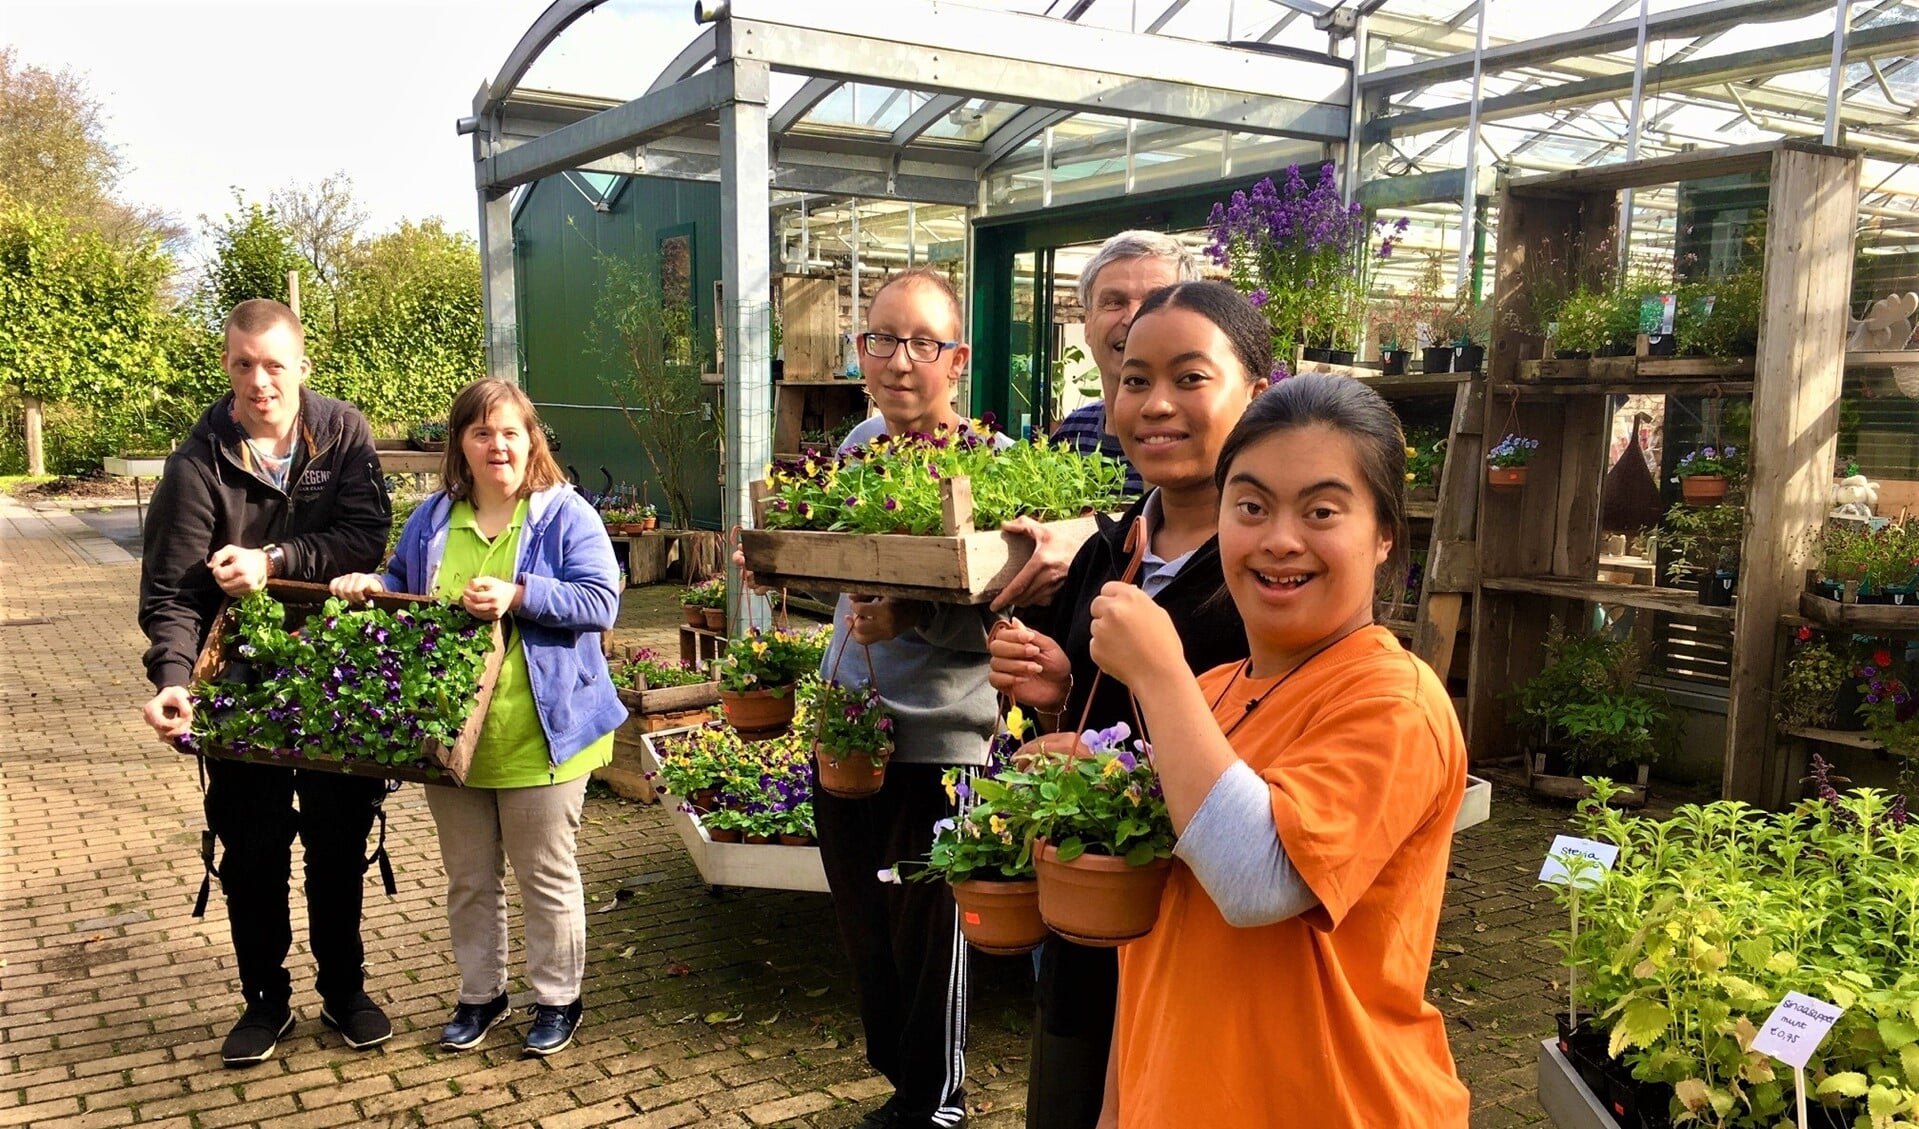 De medewerkers van de kwekerij op Buitengoed Dorrepaal hebben violen opgekweekt die te koop zijn in de tuinwinkel (foto: pr).